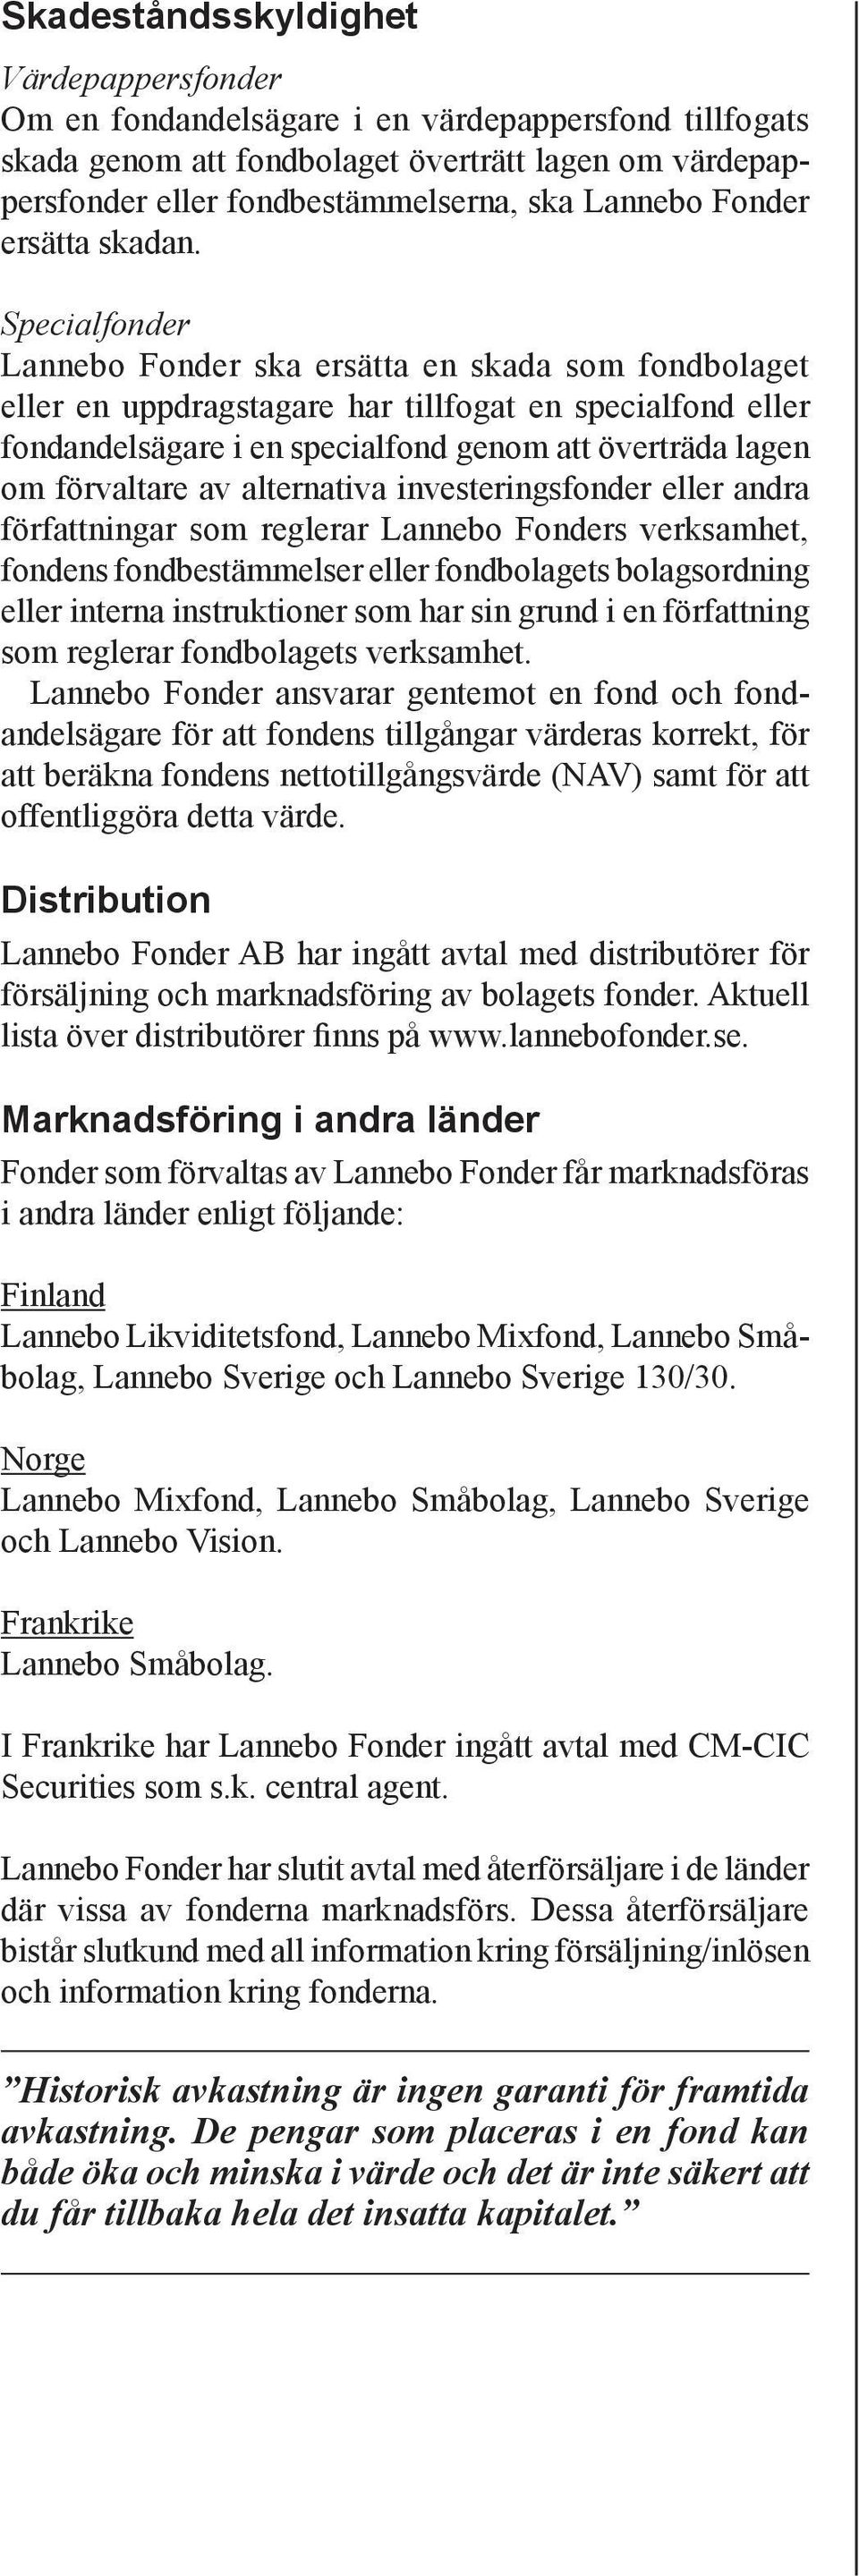 Specialfonder Lannebo Fonder ska ersätta en skada som fondbolaget eller en uppdragstagare har tillfogat en specialfond eller fondandelsägare i en specialfond genom att överträda lagen om förvaltare